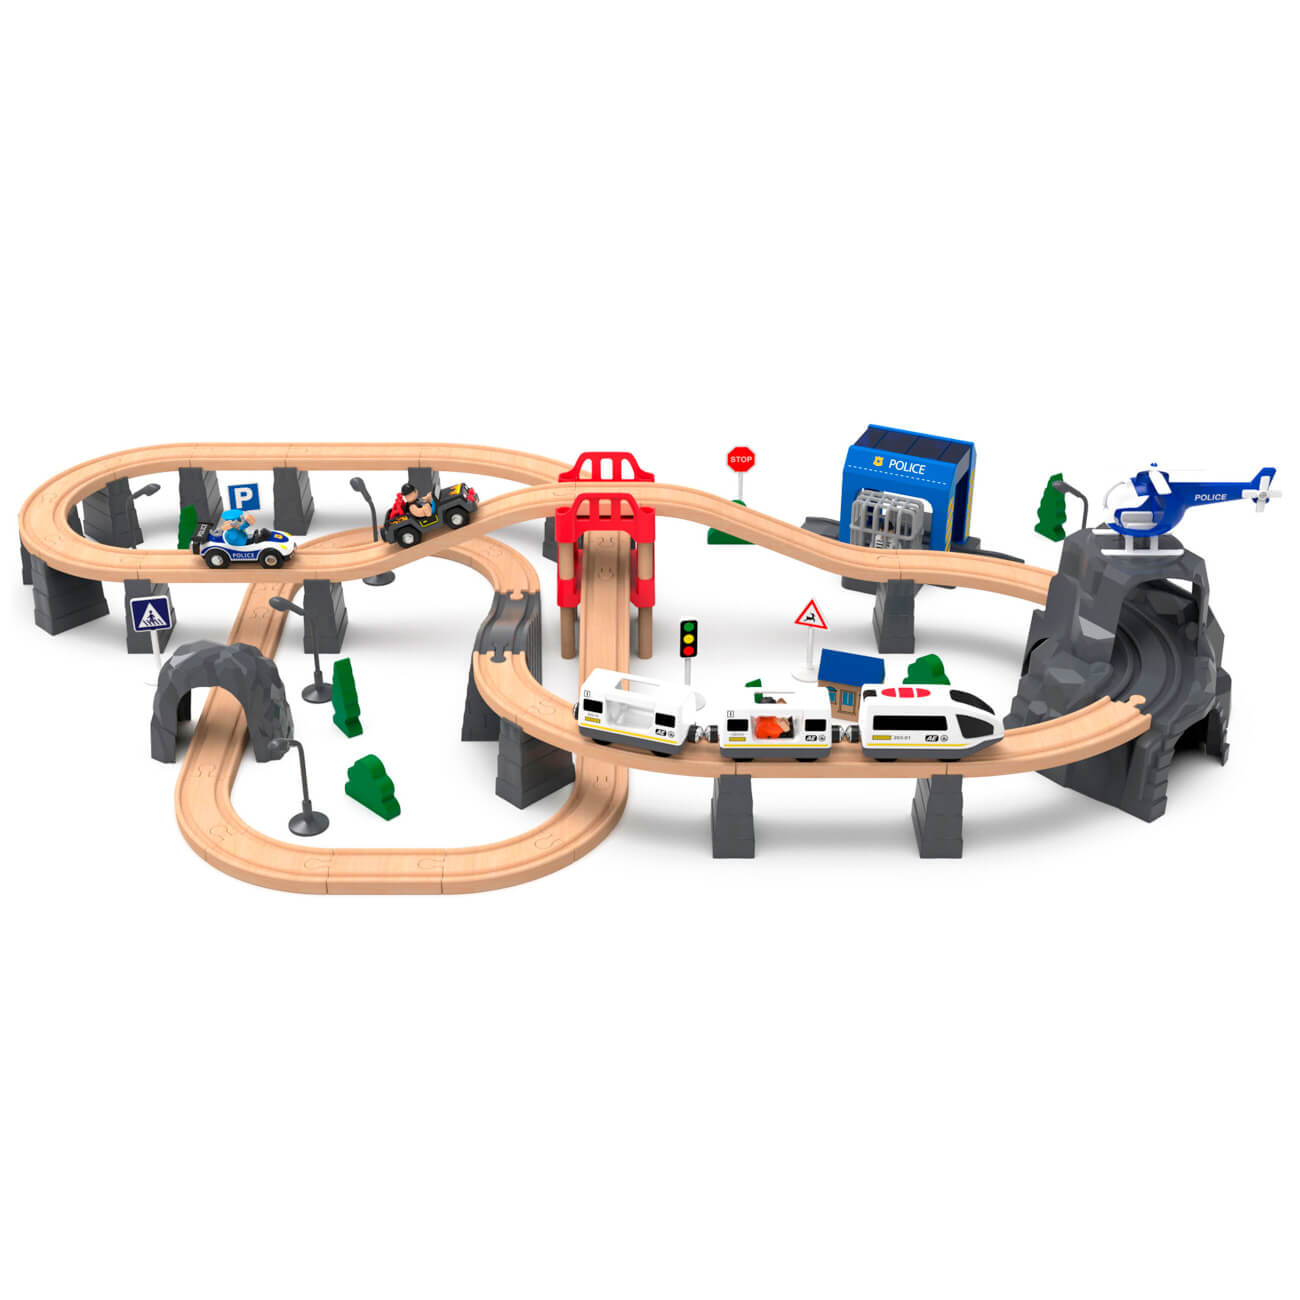 Железная дорога игрушечная, 98 см, дерево/пластик, Электропоезд, Game rail железная дорога путешествие на море поезд на батарейках 92 элемента